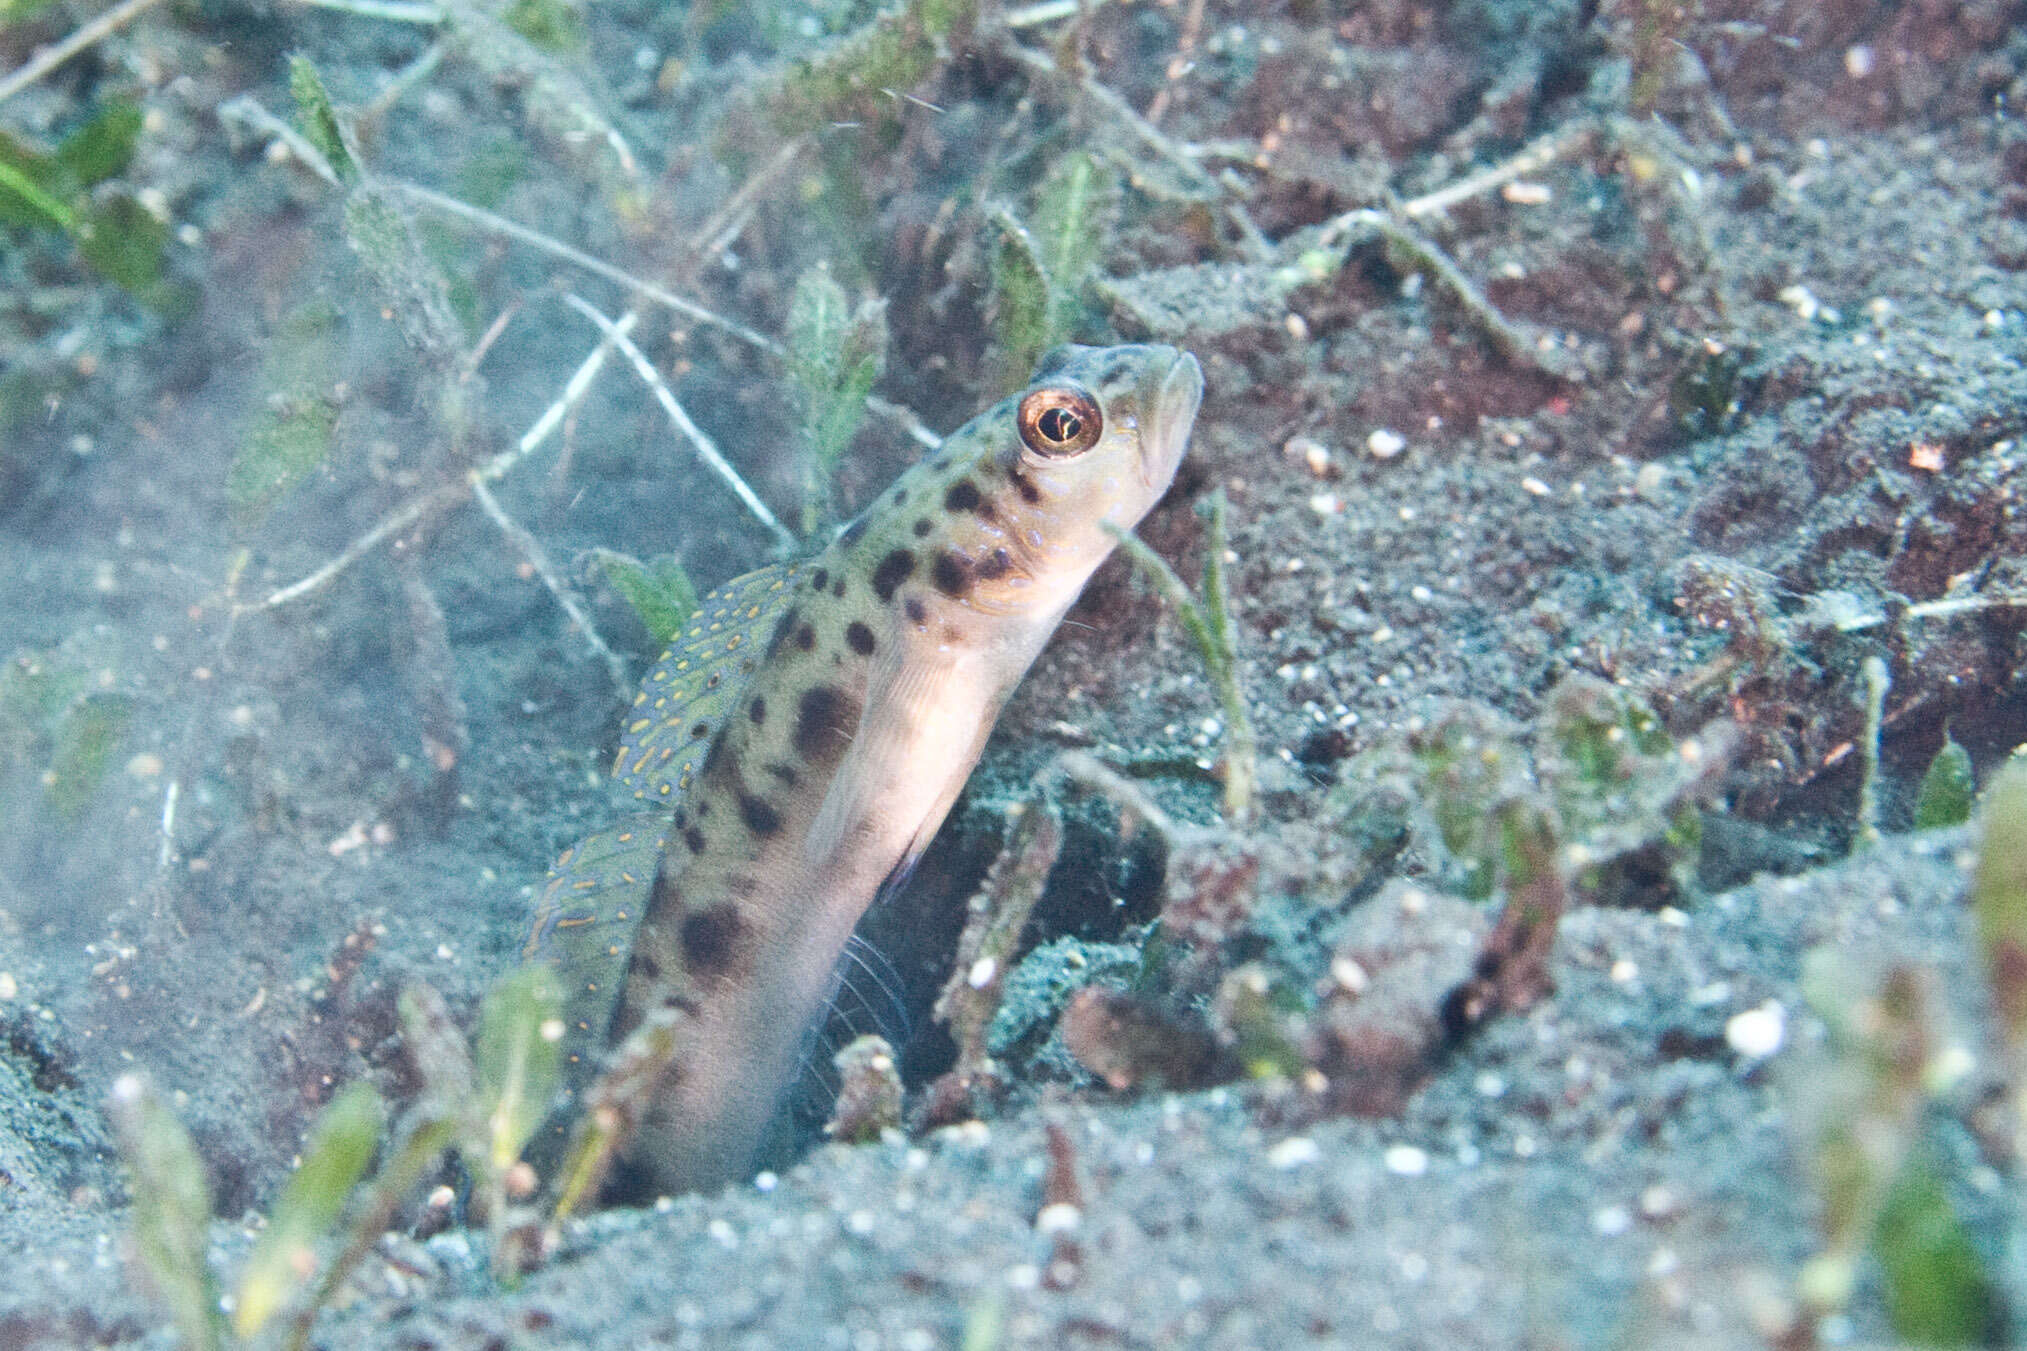 Image of Ambanoro shrimpgoby